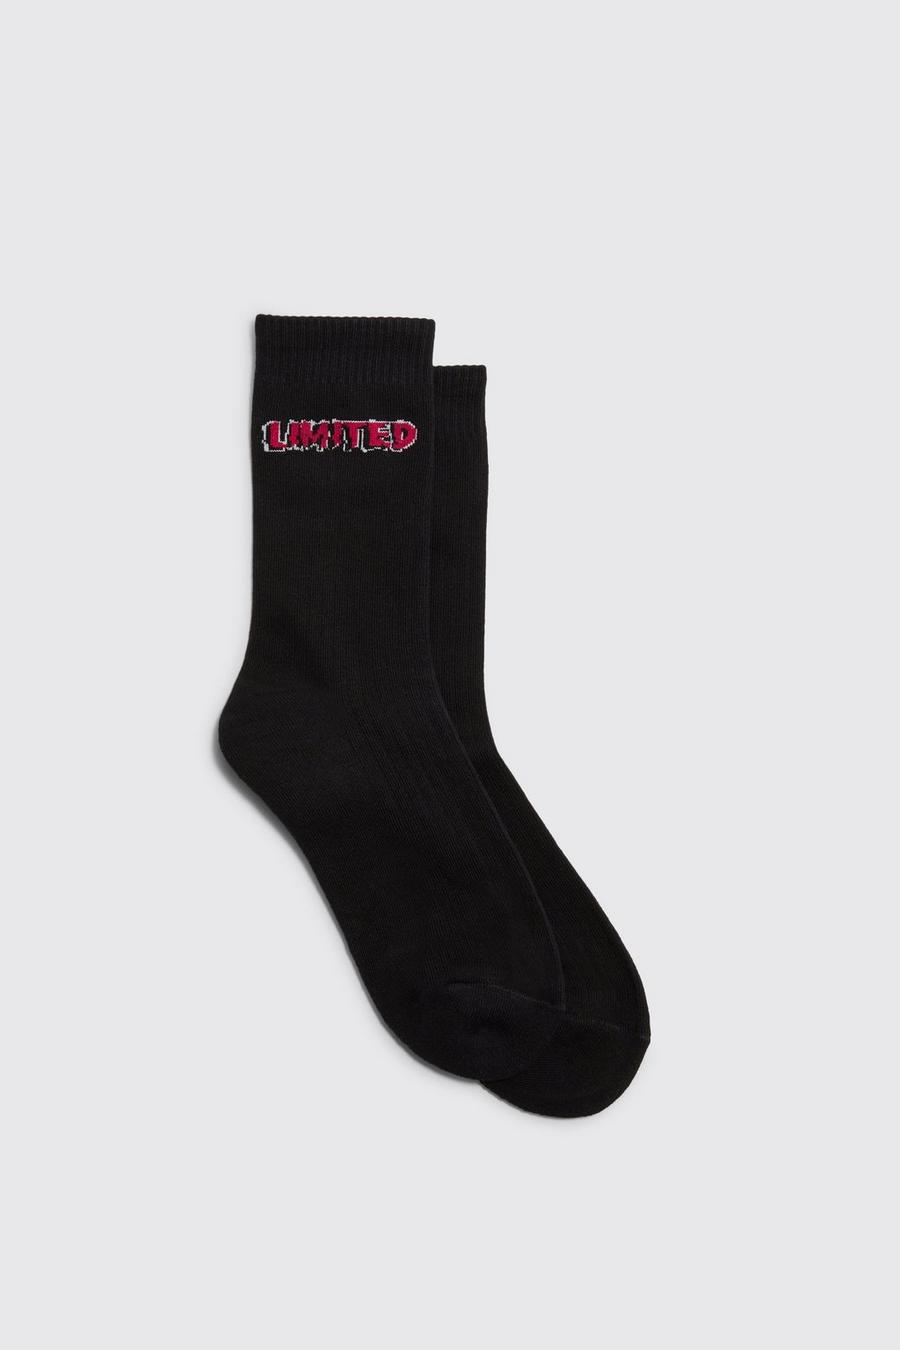 Black Limited Socks